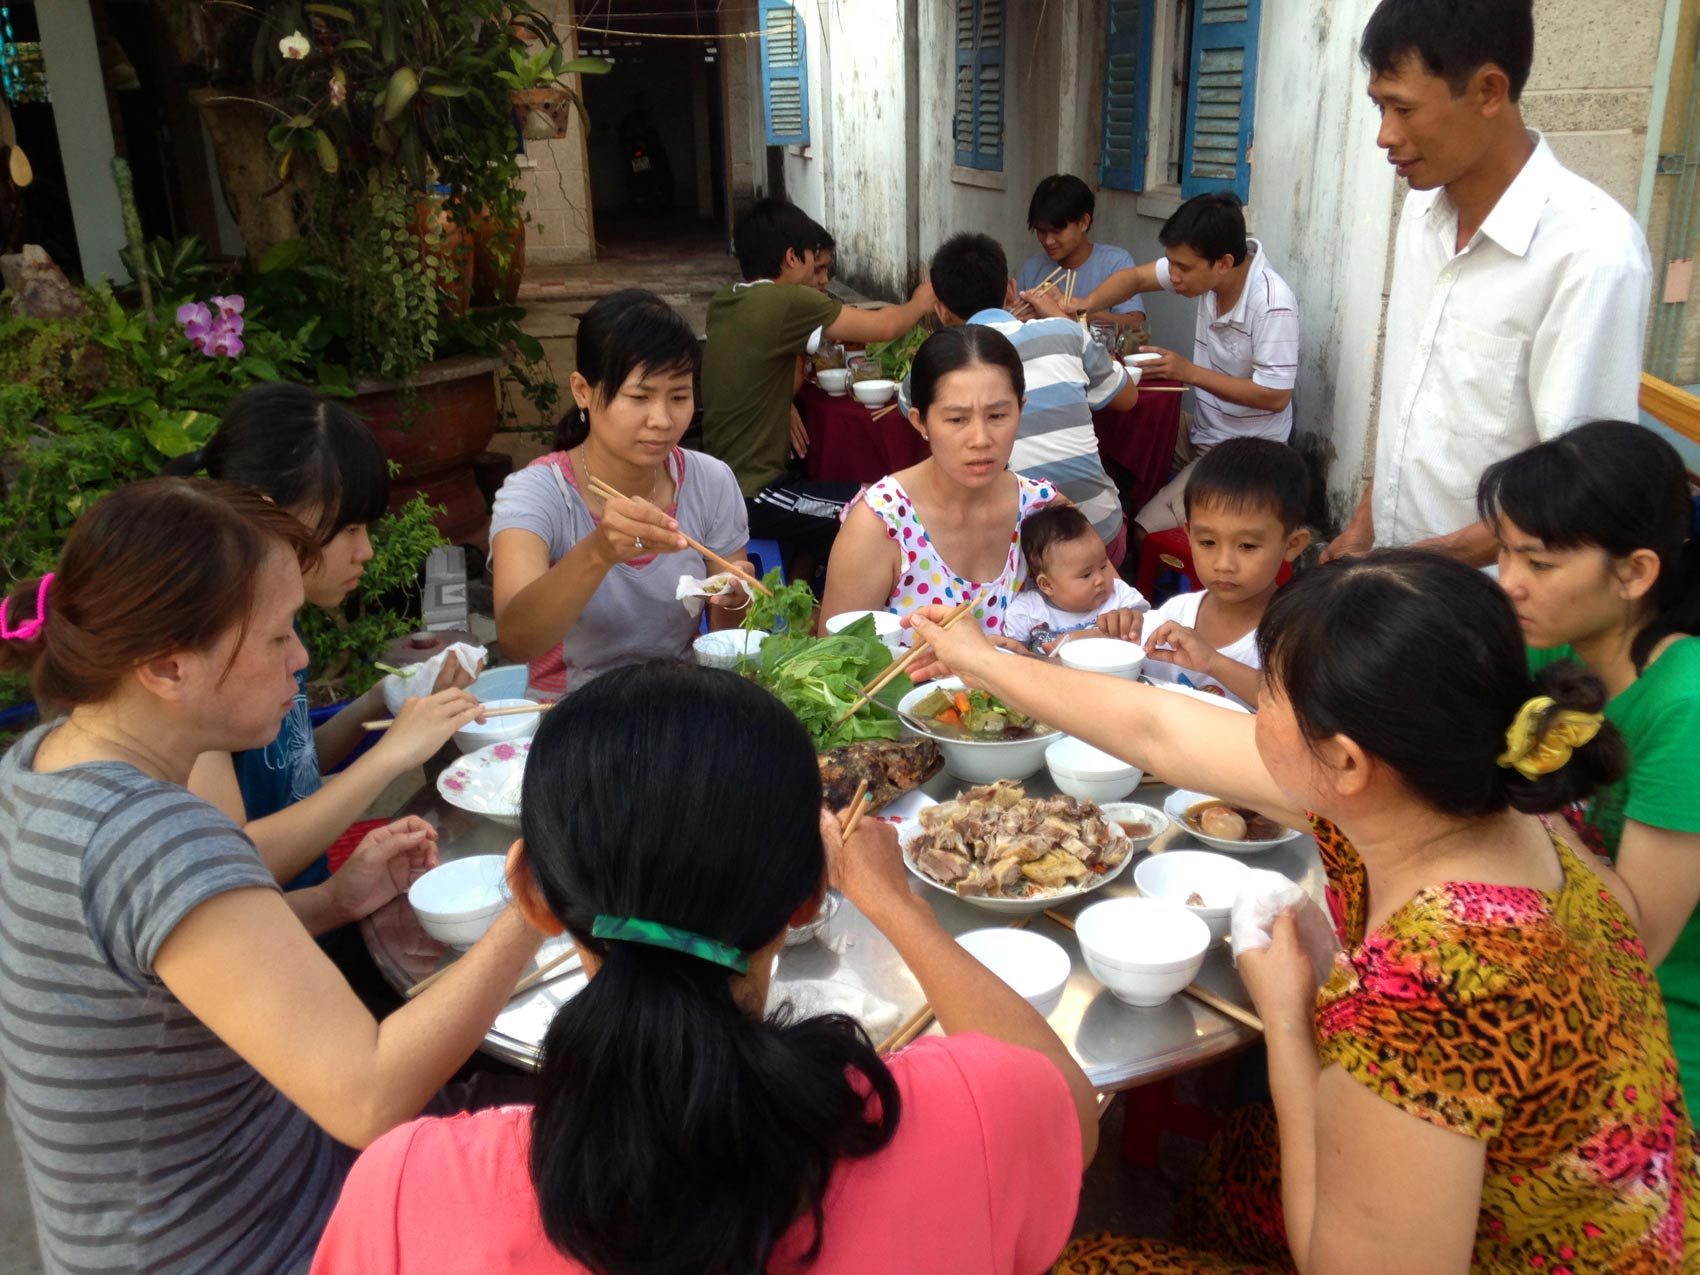 Đám giỗ ngày xưa là một phần văn hóa truyền thống Việt Nam, là lời tri ân đối với tổ tiên đã truyền lại những giá trị quý báu cho hậu thế. Hãy cùng xem hình ảnh để tìm hiểu về cách làm lễ giỗ, các món ăn truyền thống và ý nghĩa sâu sắc của lễ hội này.